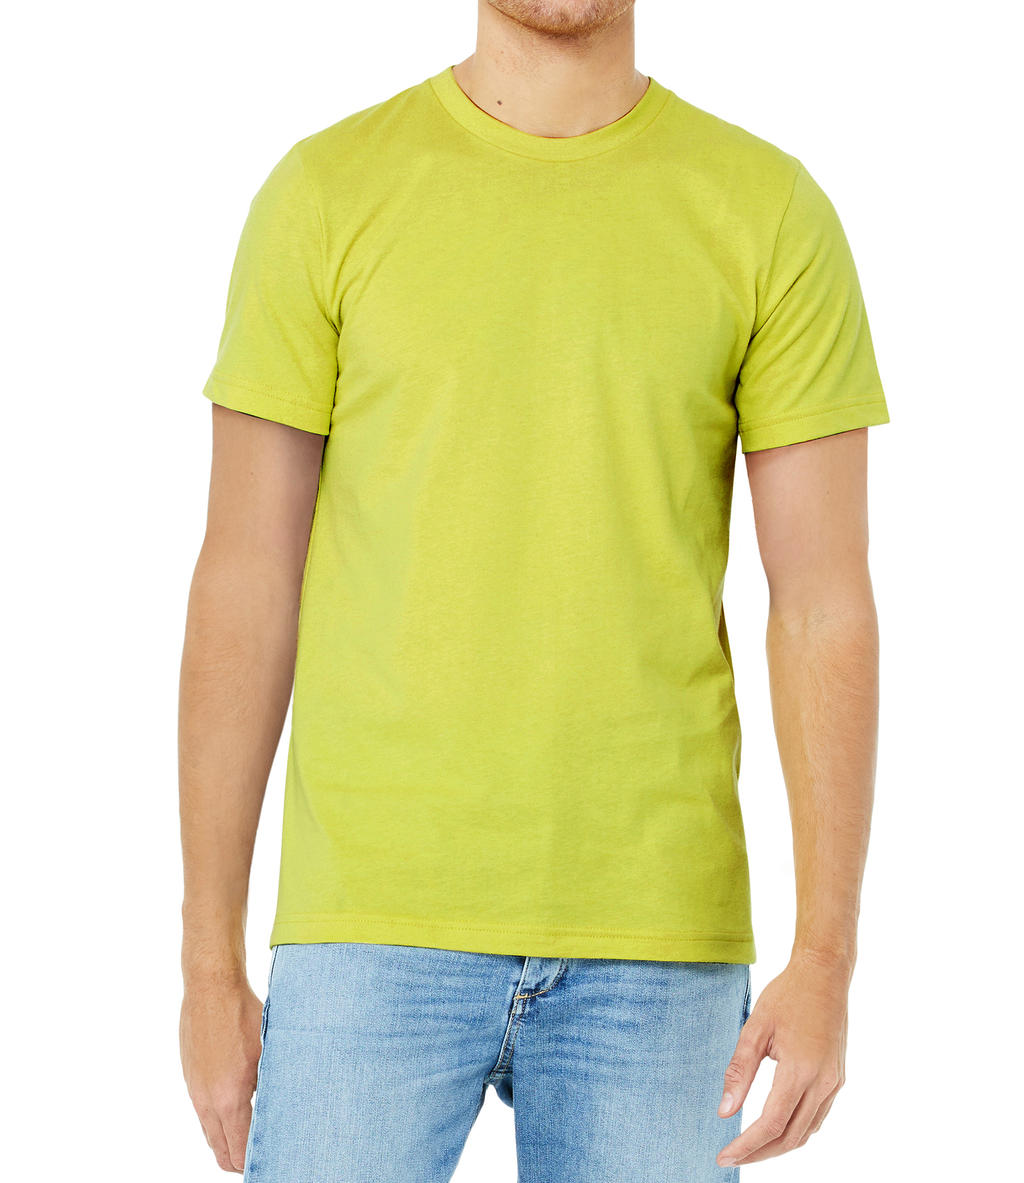 Tričko Bella Jersey - žluté-zelené, XXL